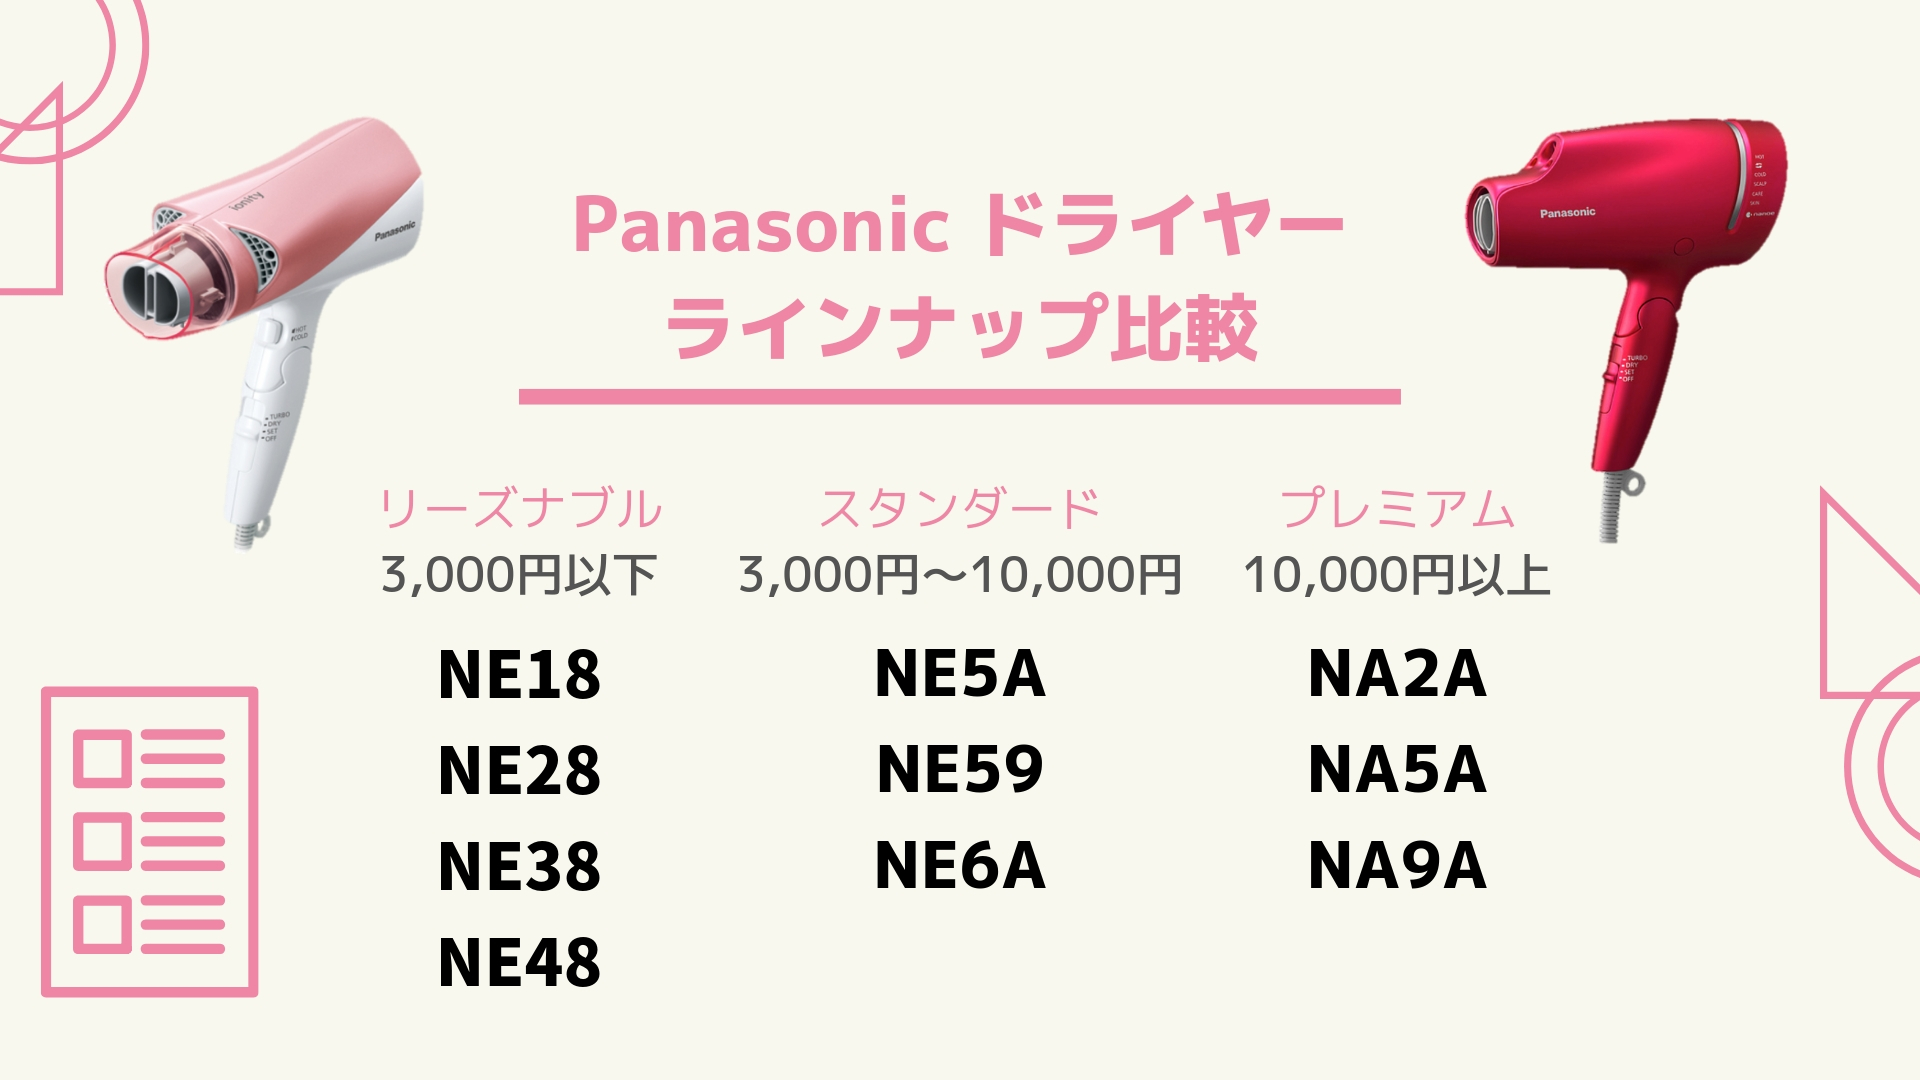 ナノケア比較】Panasonicドライヤーナノケア10機種を価格別に比較 